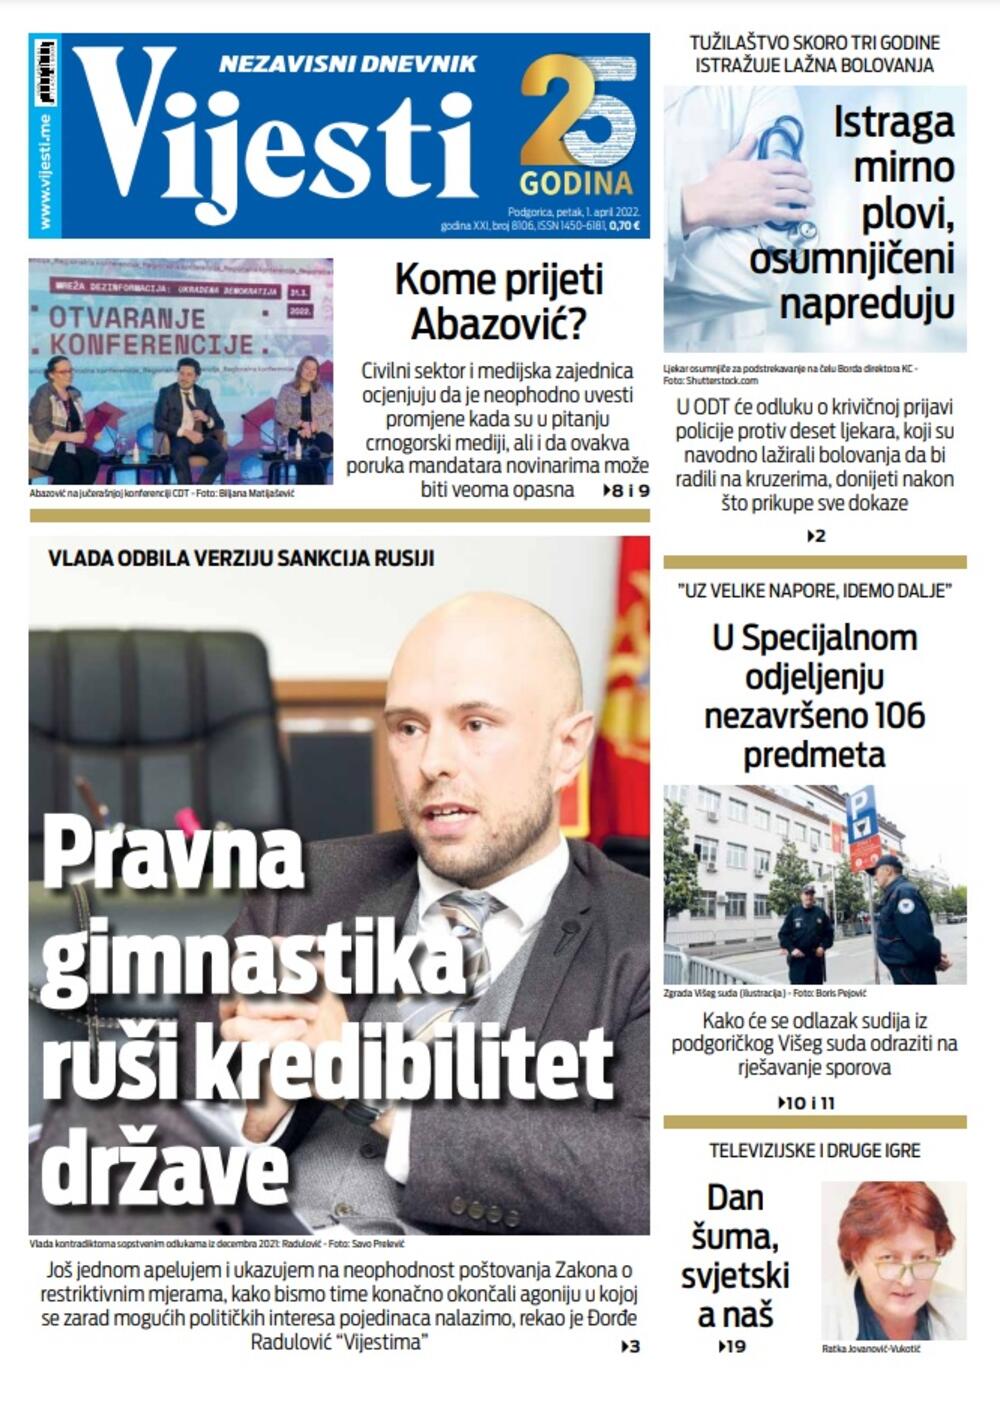 Naslovna strana "Vijesti" za 1. april 2022., Foto: Vijesti